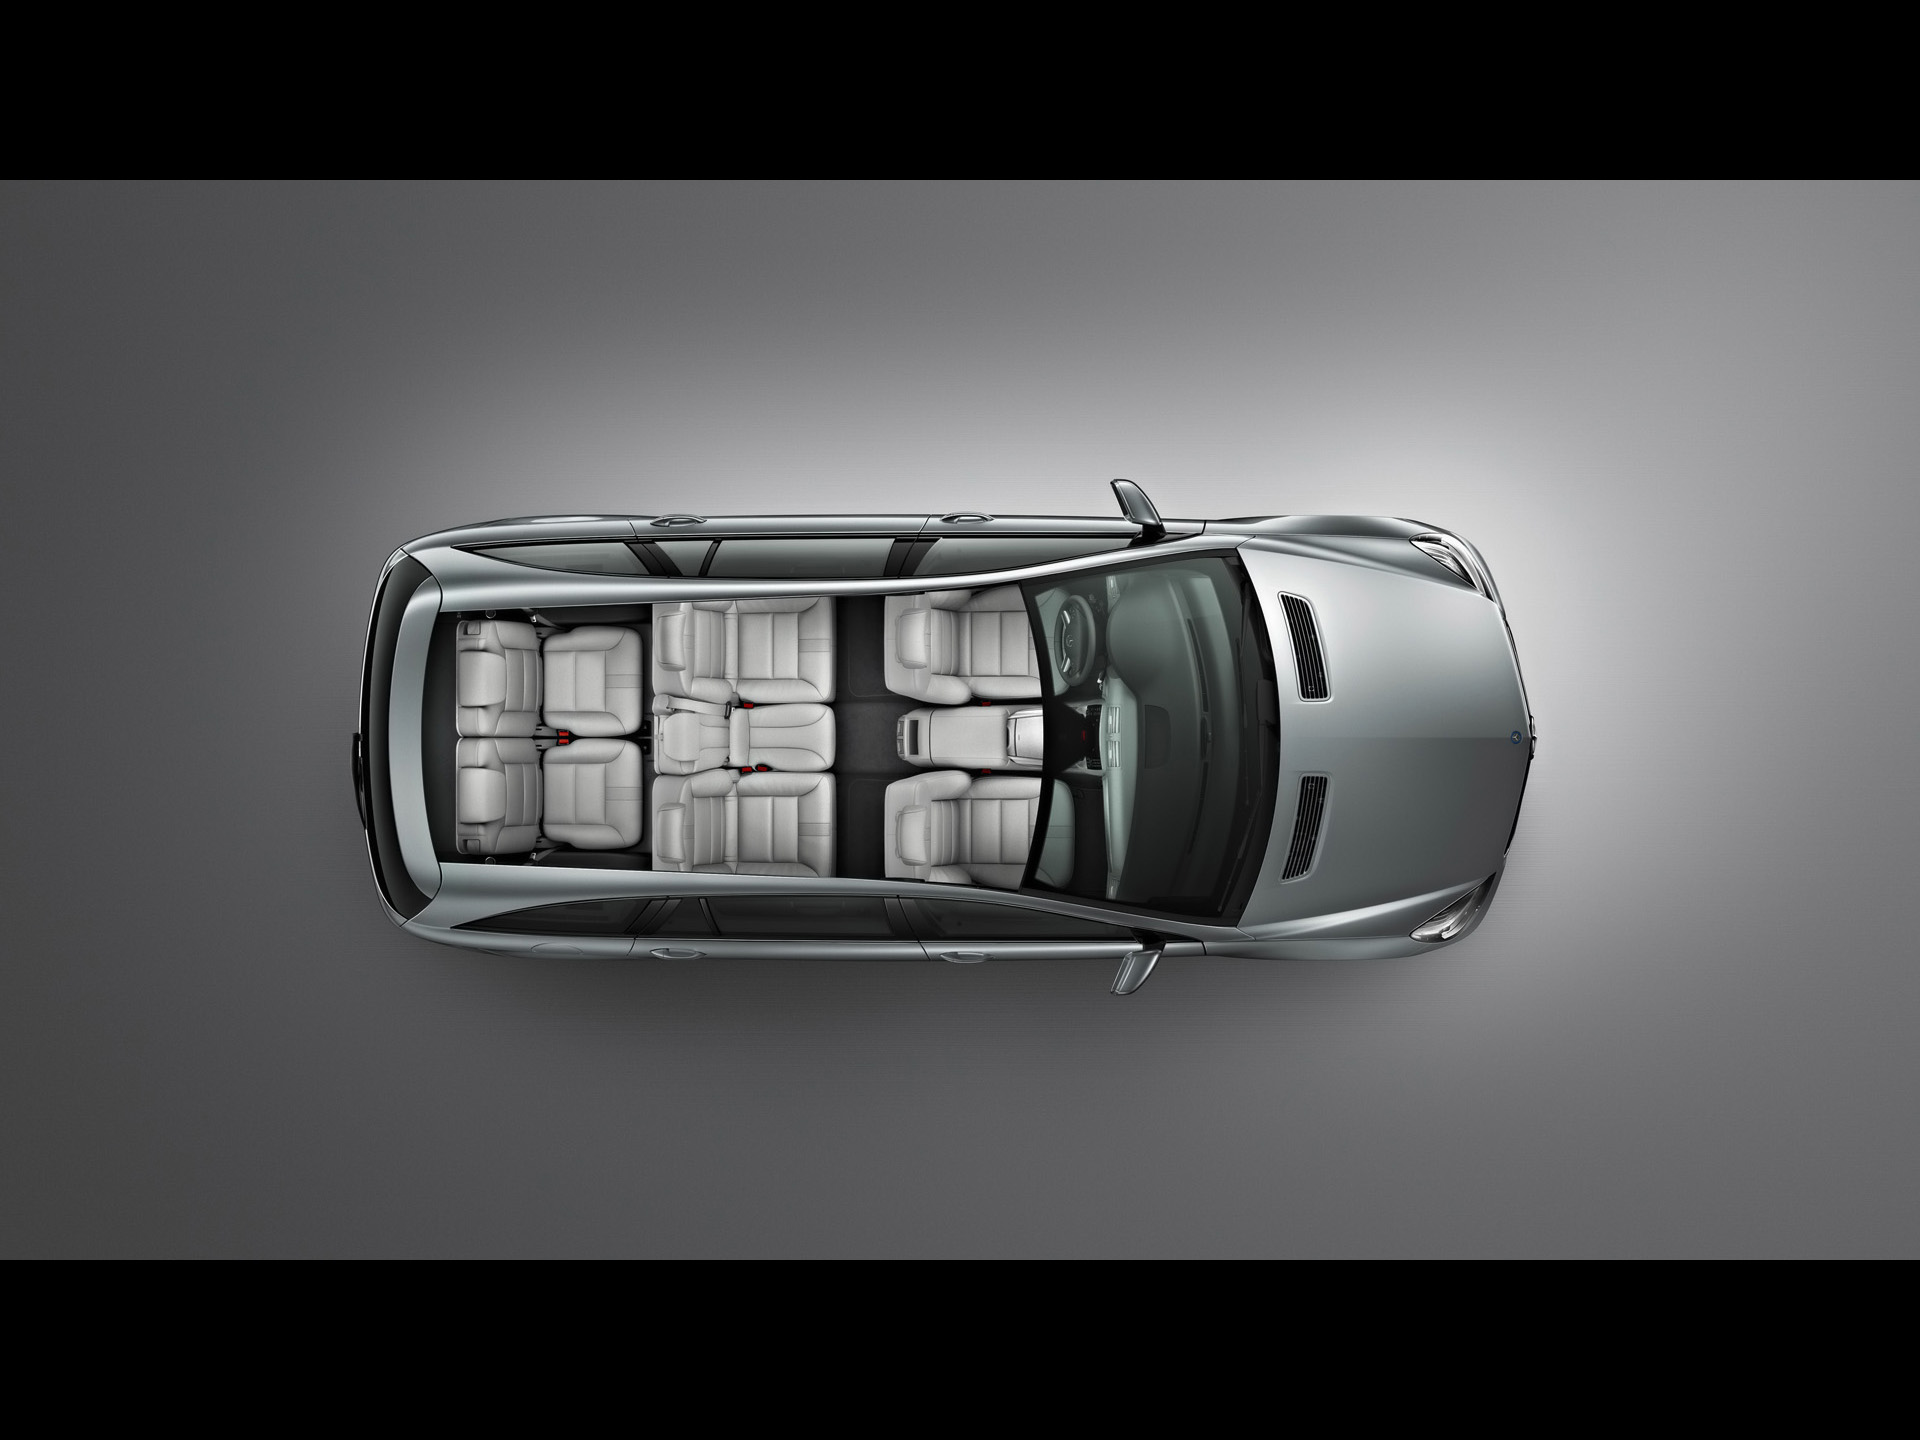 Mercedes Benz R Class Interior , HD Wallpaper & Backgrounds